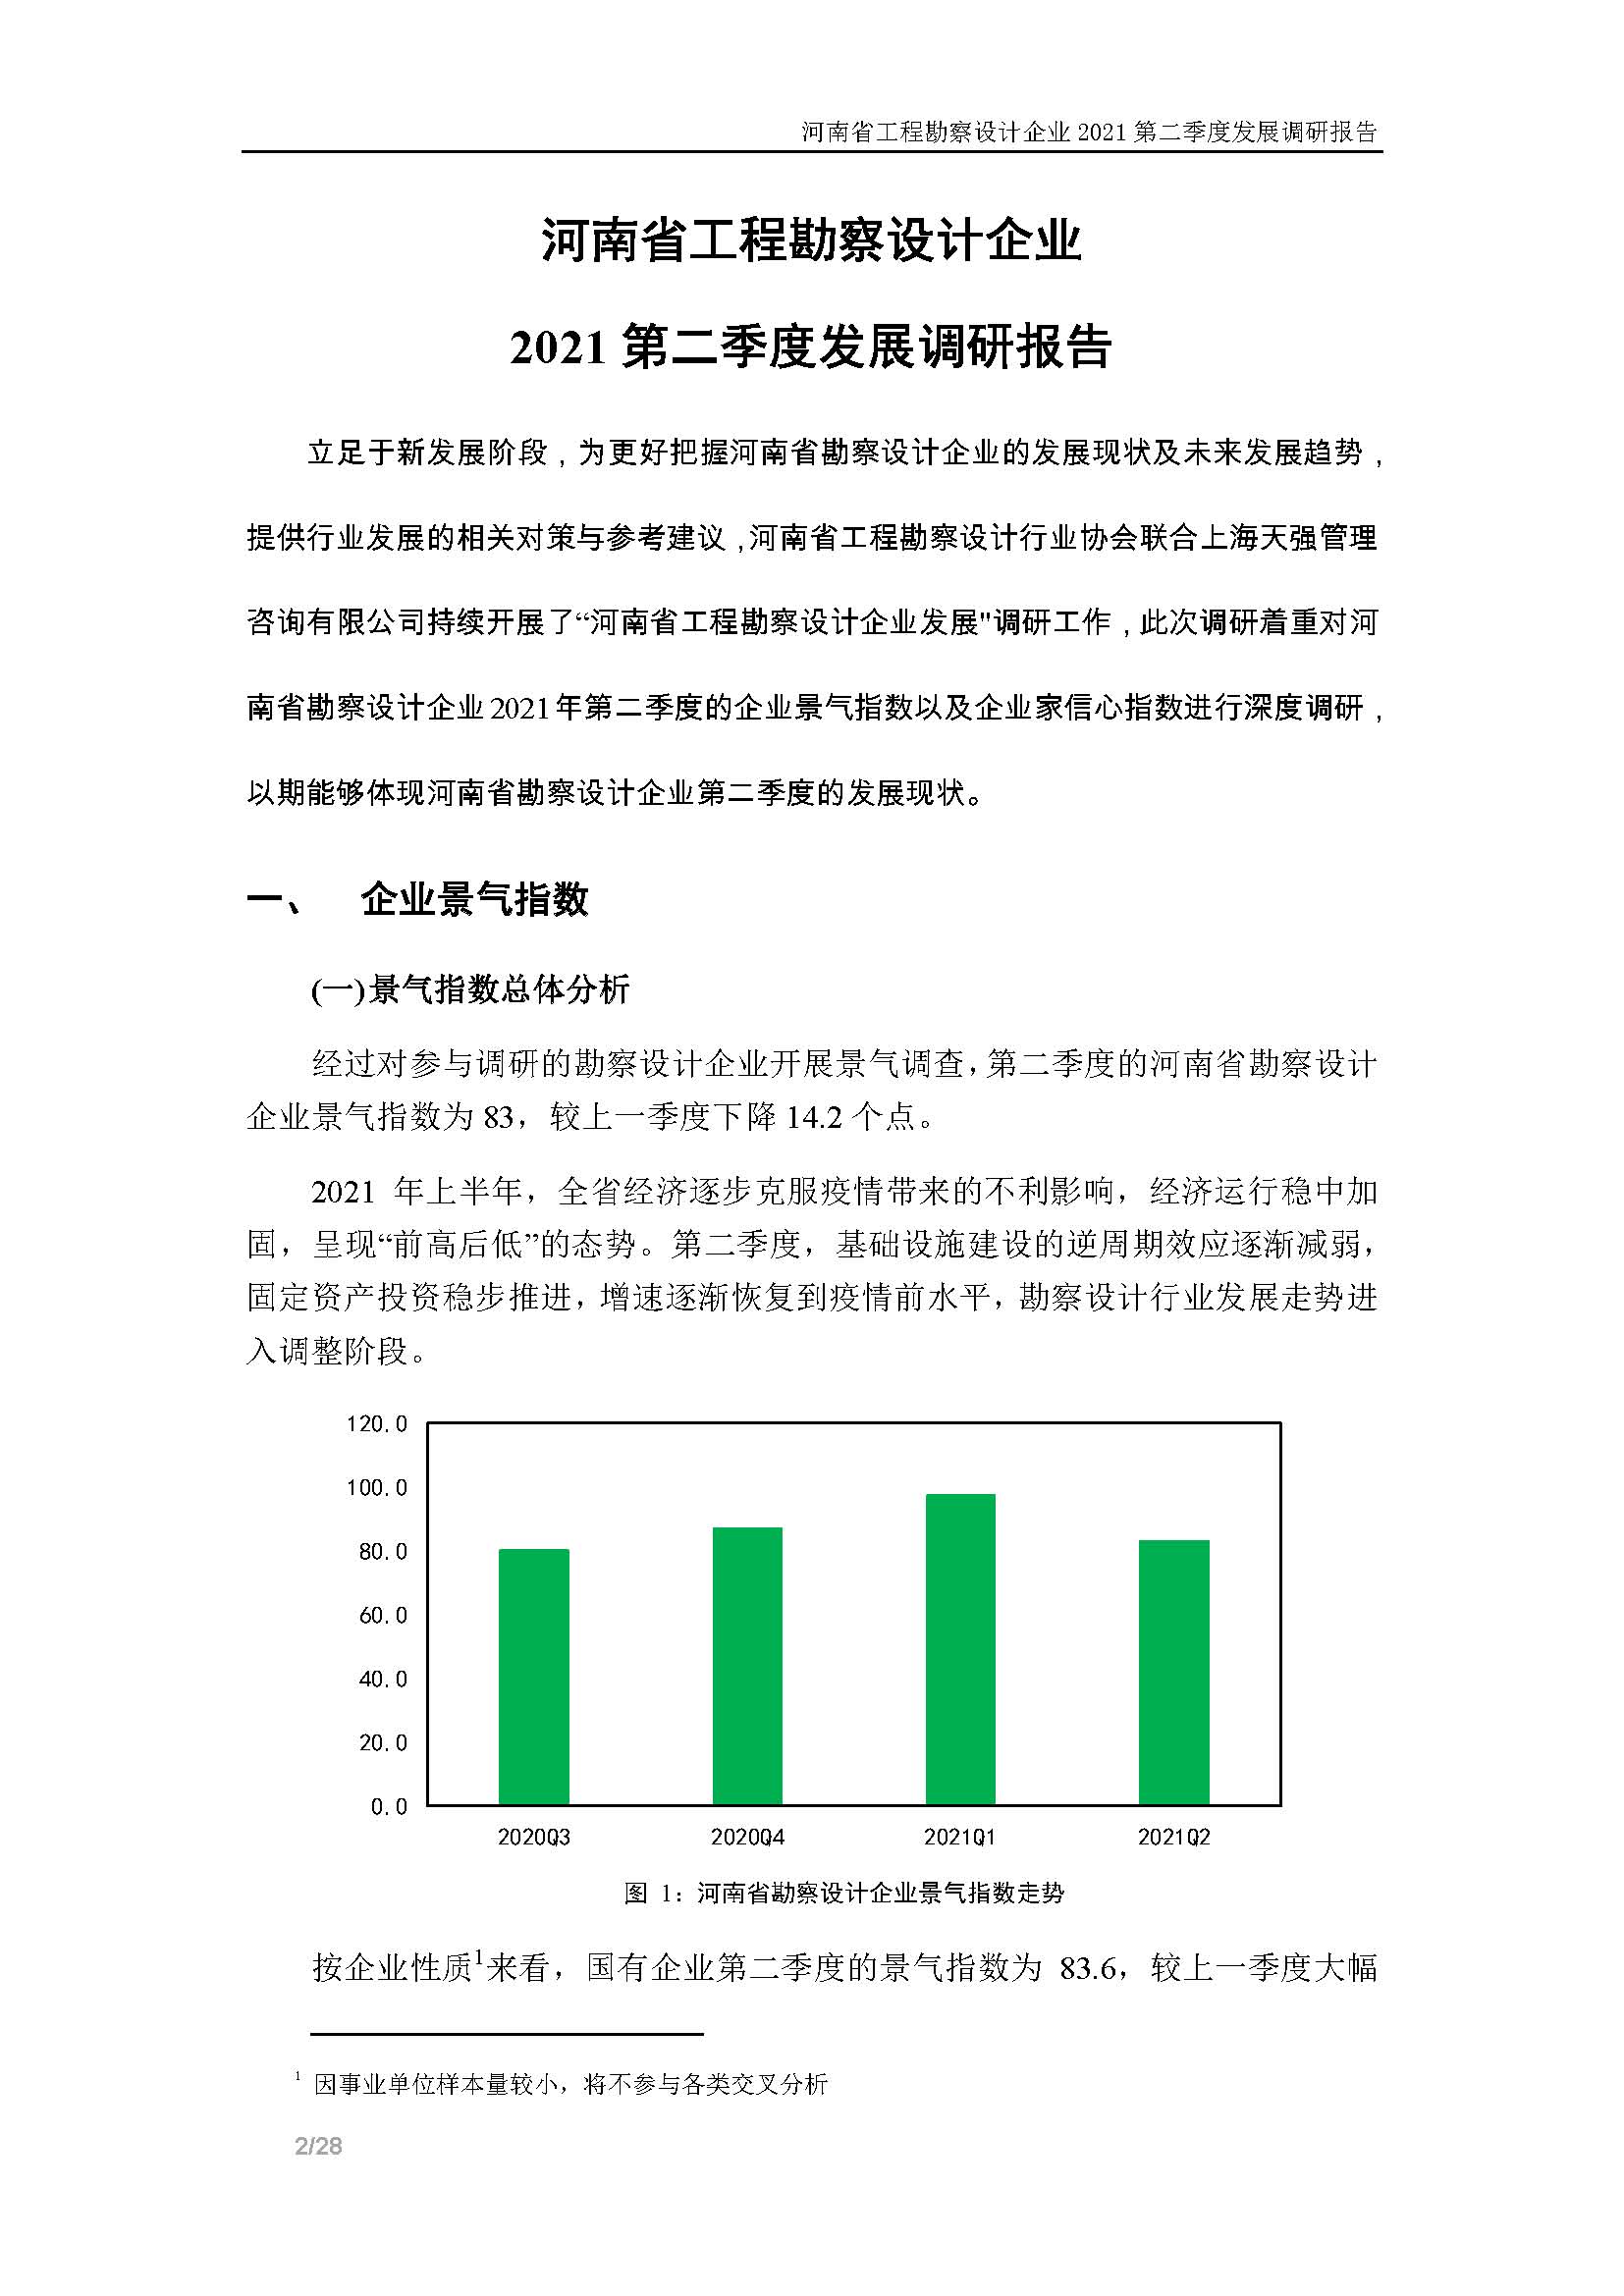 河南省工程勘察设计企业2021第二季度发展调研报告-公开版_页面_03.jpg